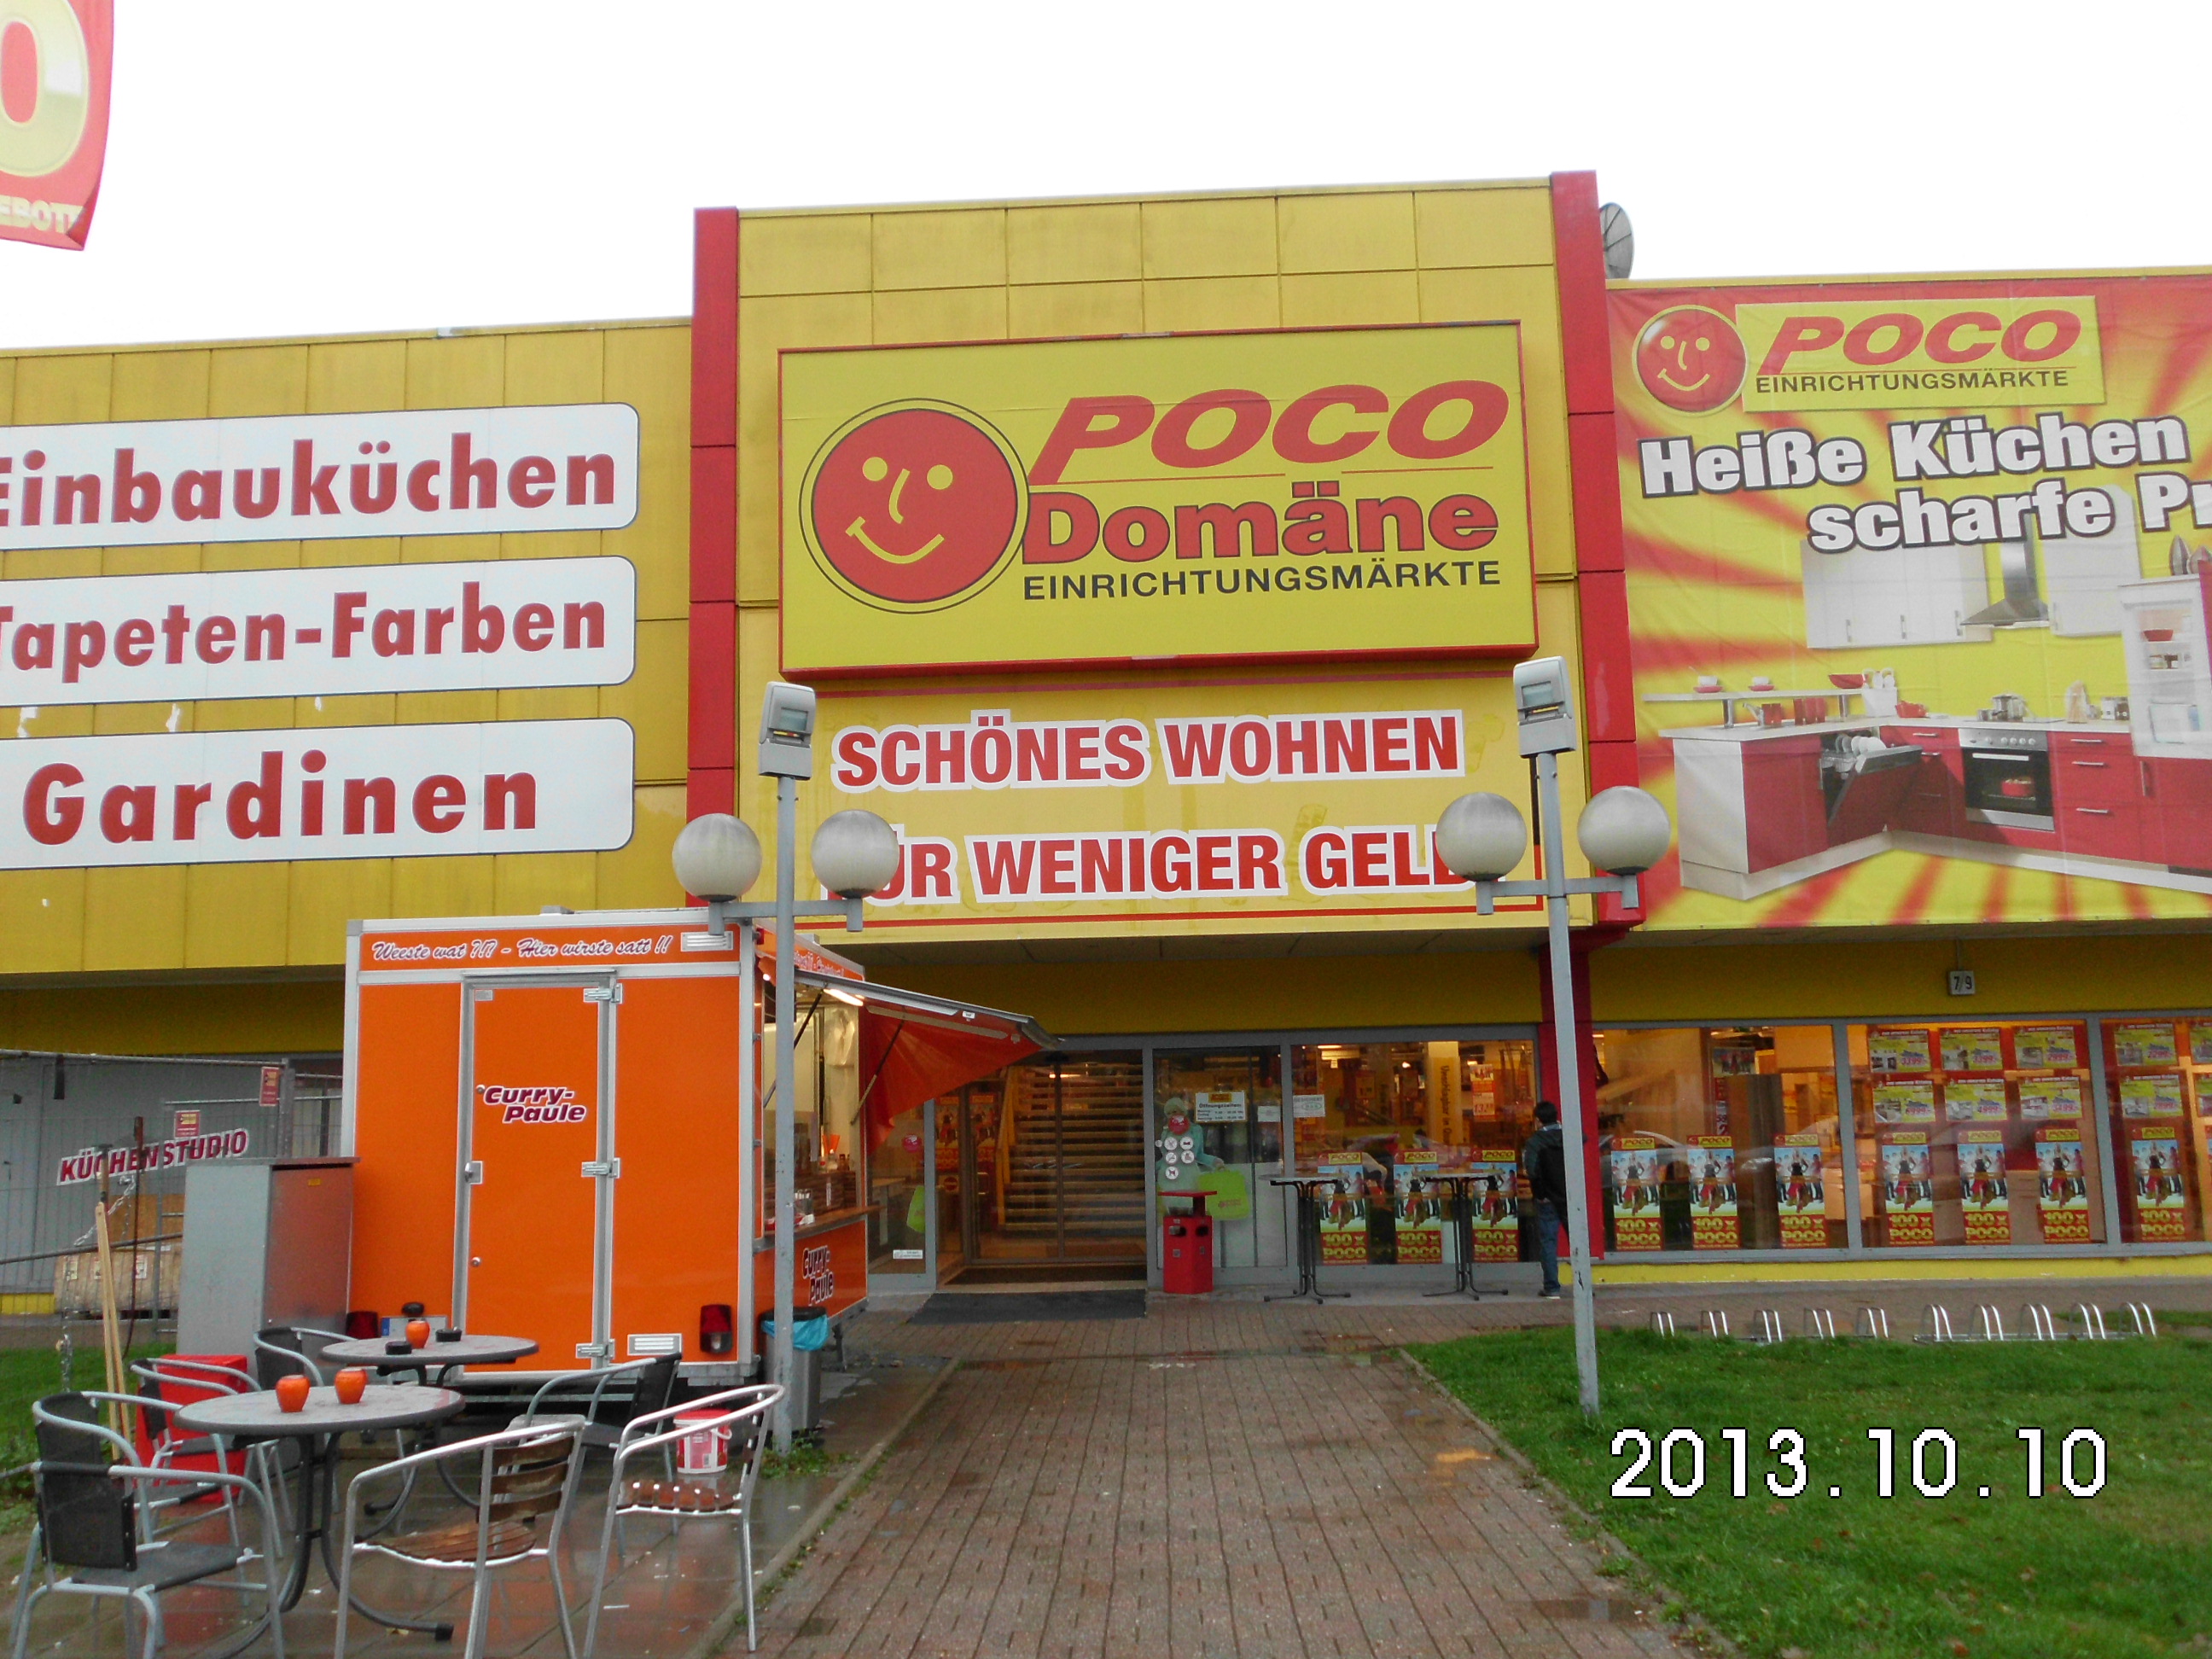 POCODomäne Einrichtungsmärkte GmbH & Co. KG 12349 Berlin